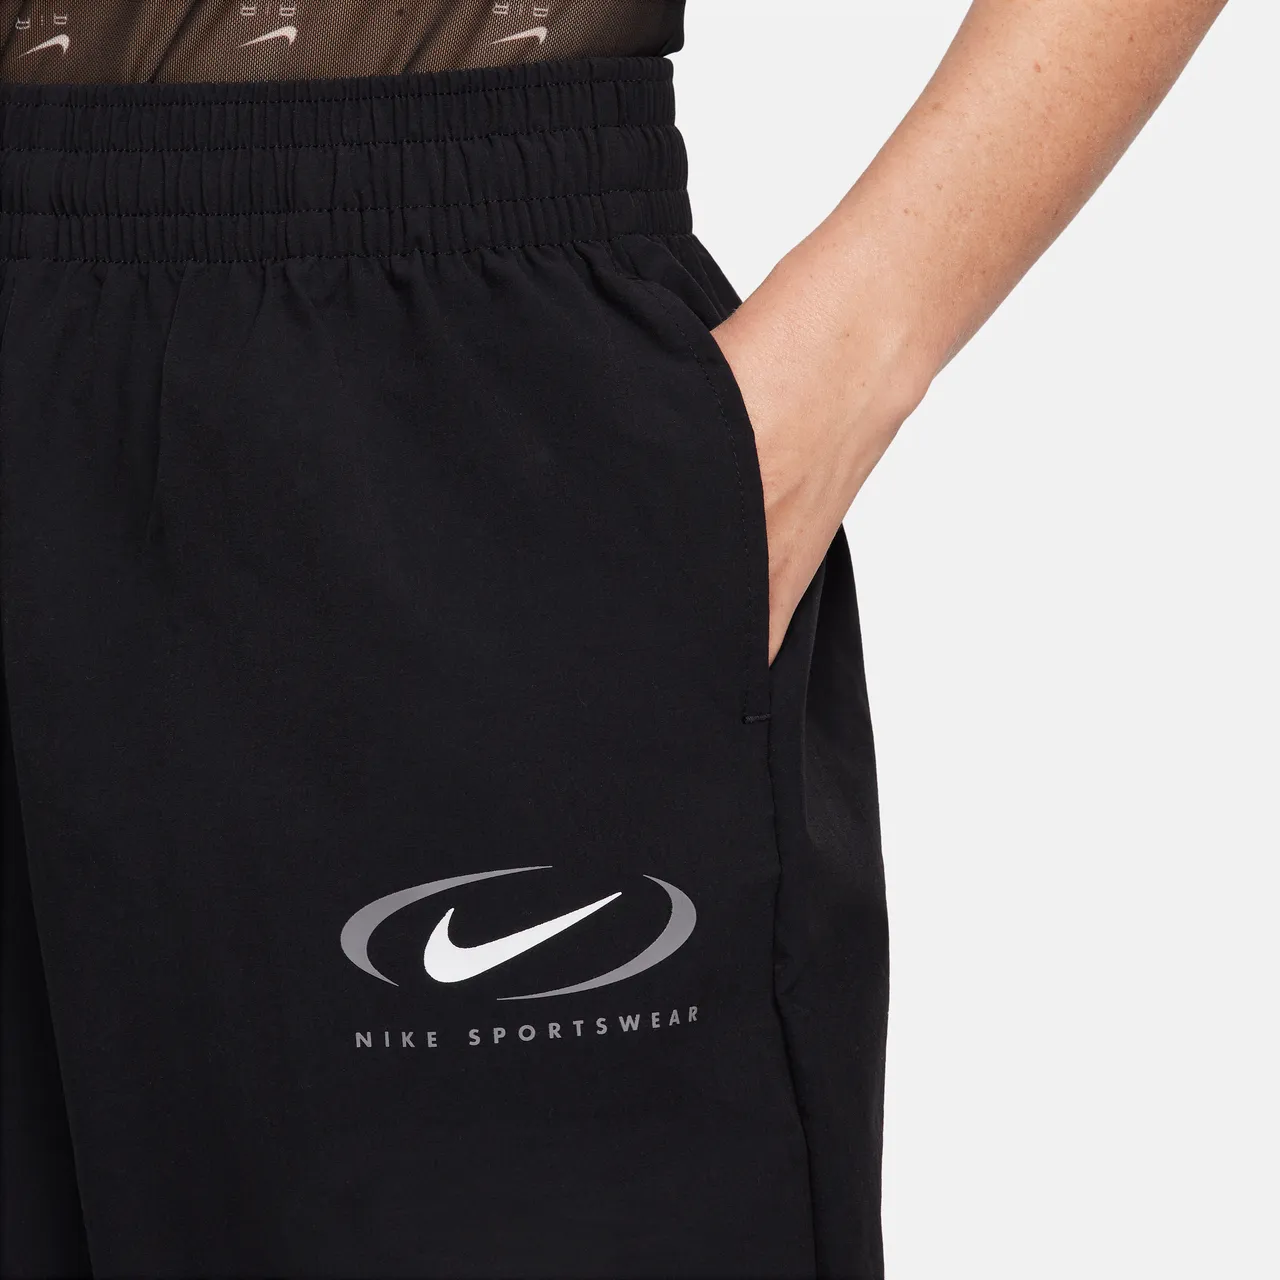 Nike Sportswear Women's Woven Joggers - Black - Polyester